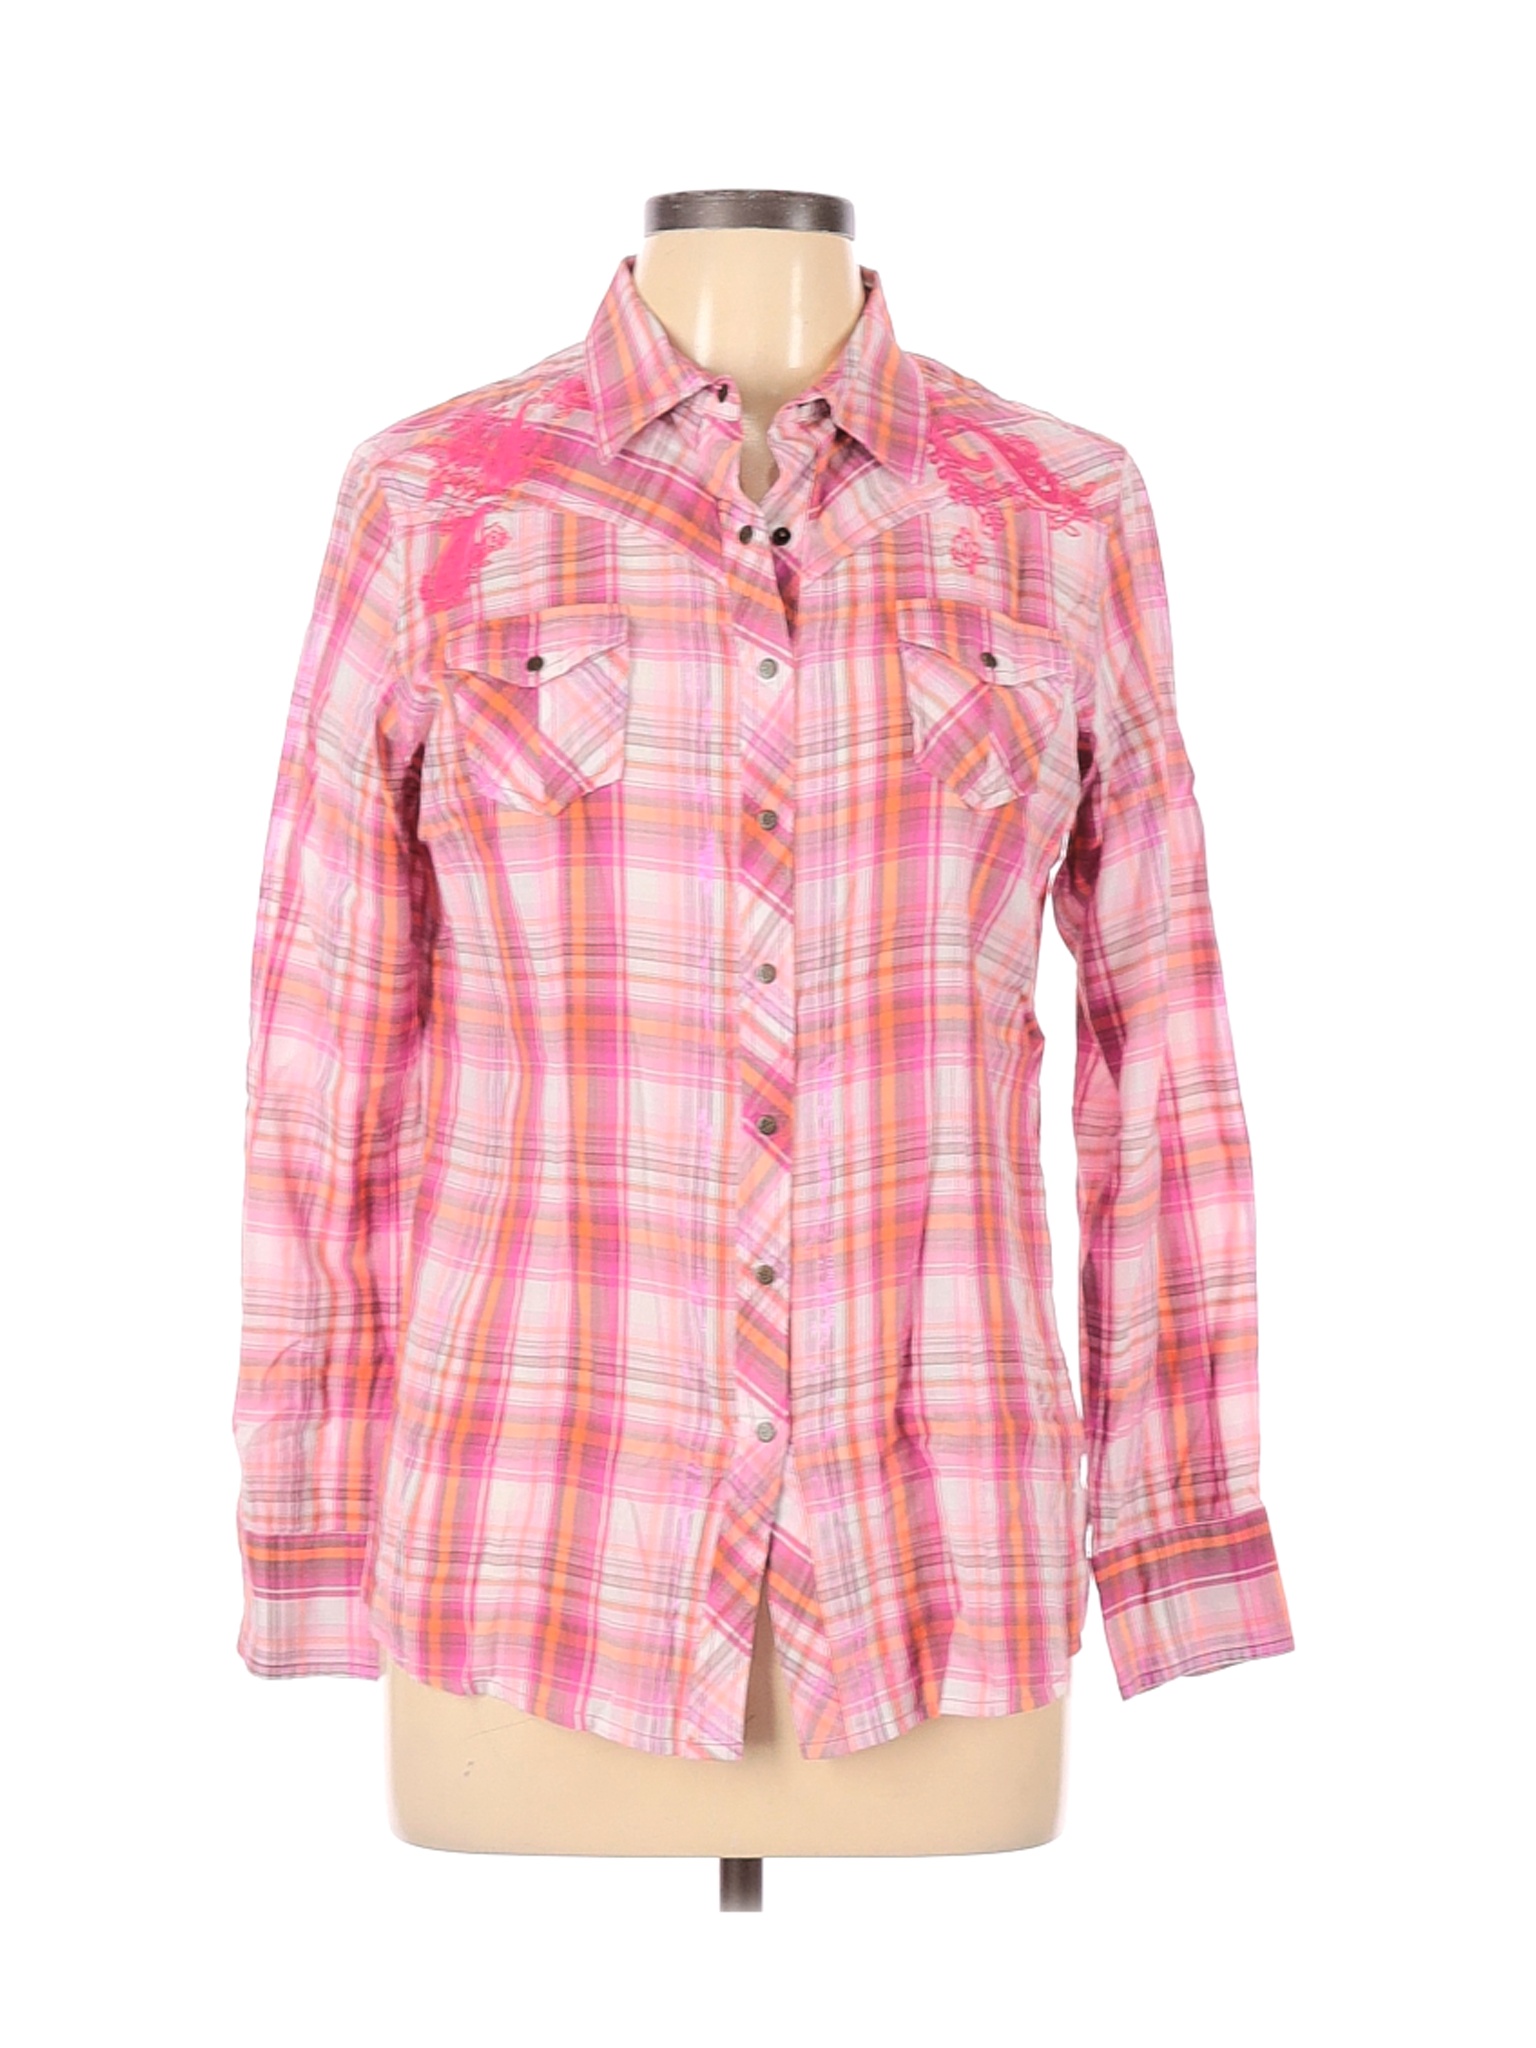 Ariat Women Pink Long Sleeve Button-Down Shirt L | eBay